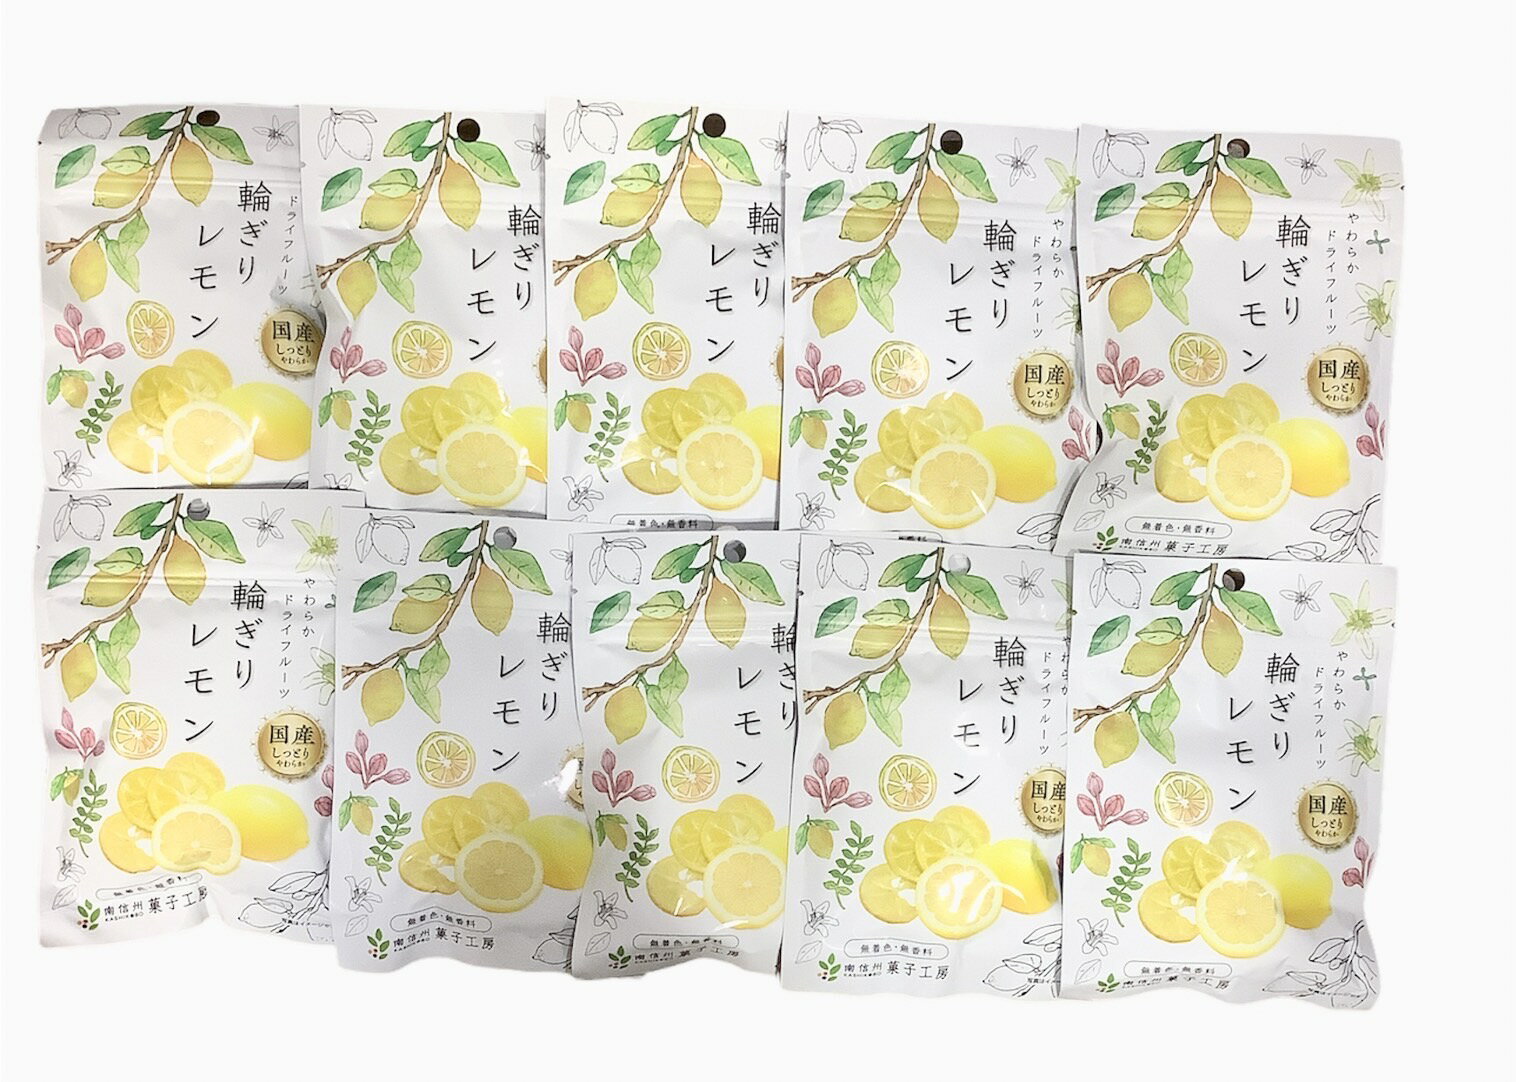 レモンスライス 200g タイ産 輪切り ドライフルーツ 世界美食探究 ドライレモン 乾燥レモン 檸檬 砂糖使用 国内加工 紅茶 レモンティー